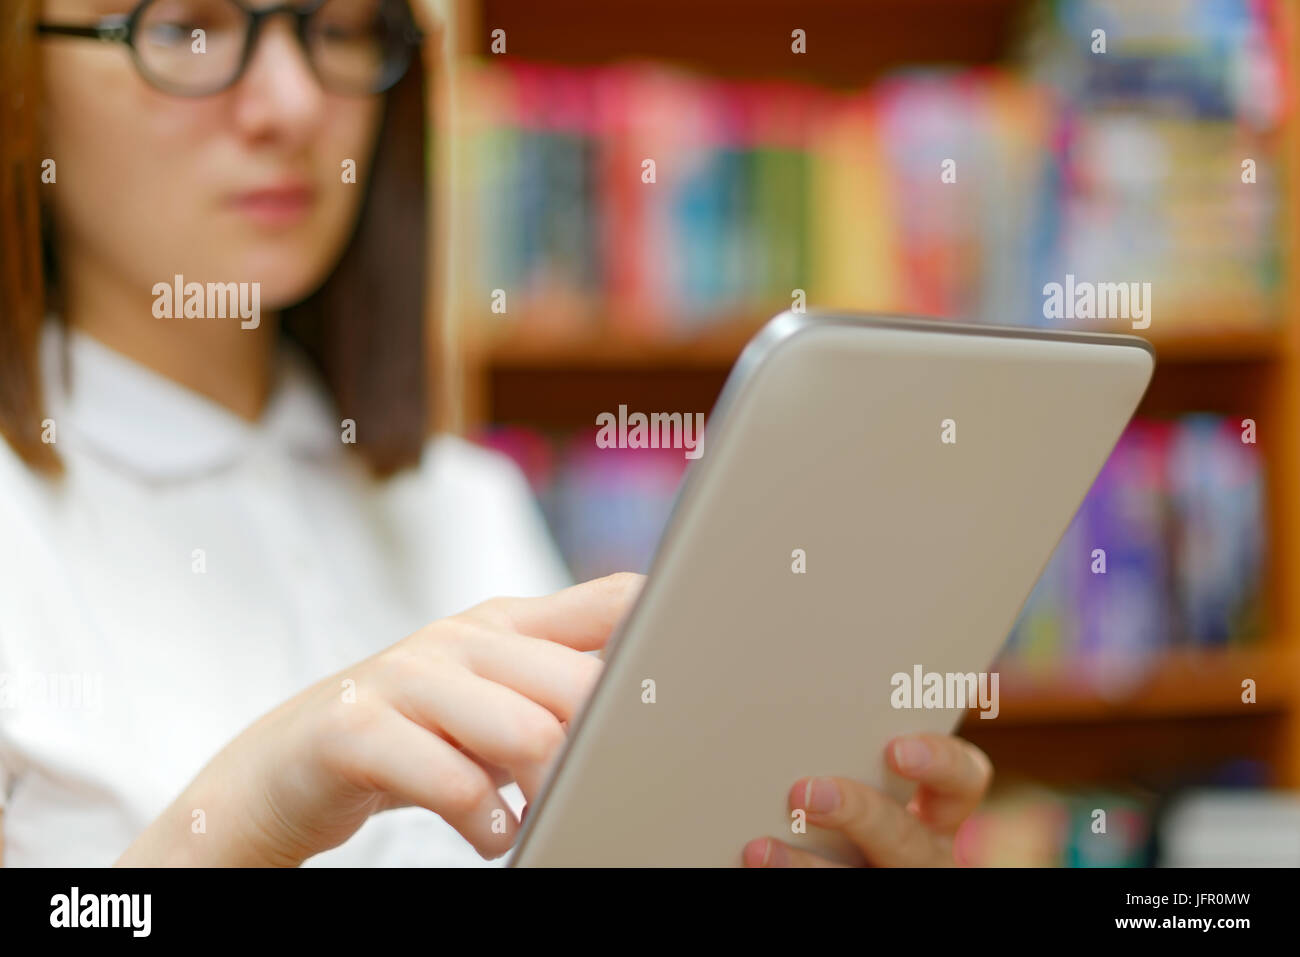 People : jeune fille, étudiante, faisant usage de l'ordinateur tablette ou e-book reader, dans une bibliothèque ou à la librairie Banque D'Images